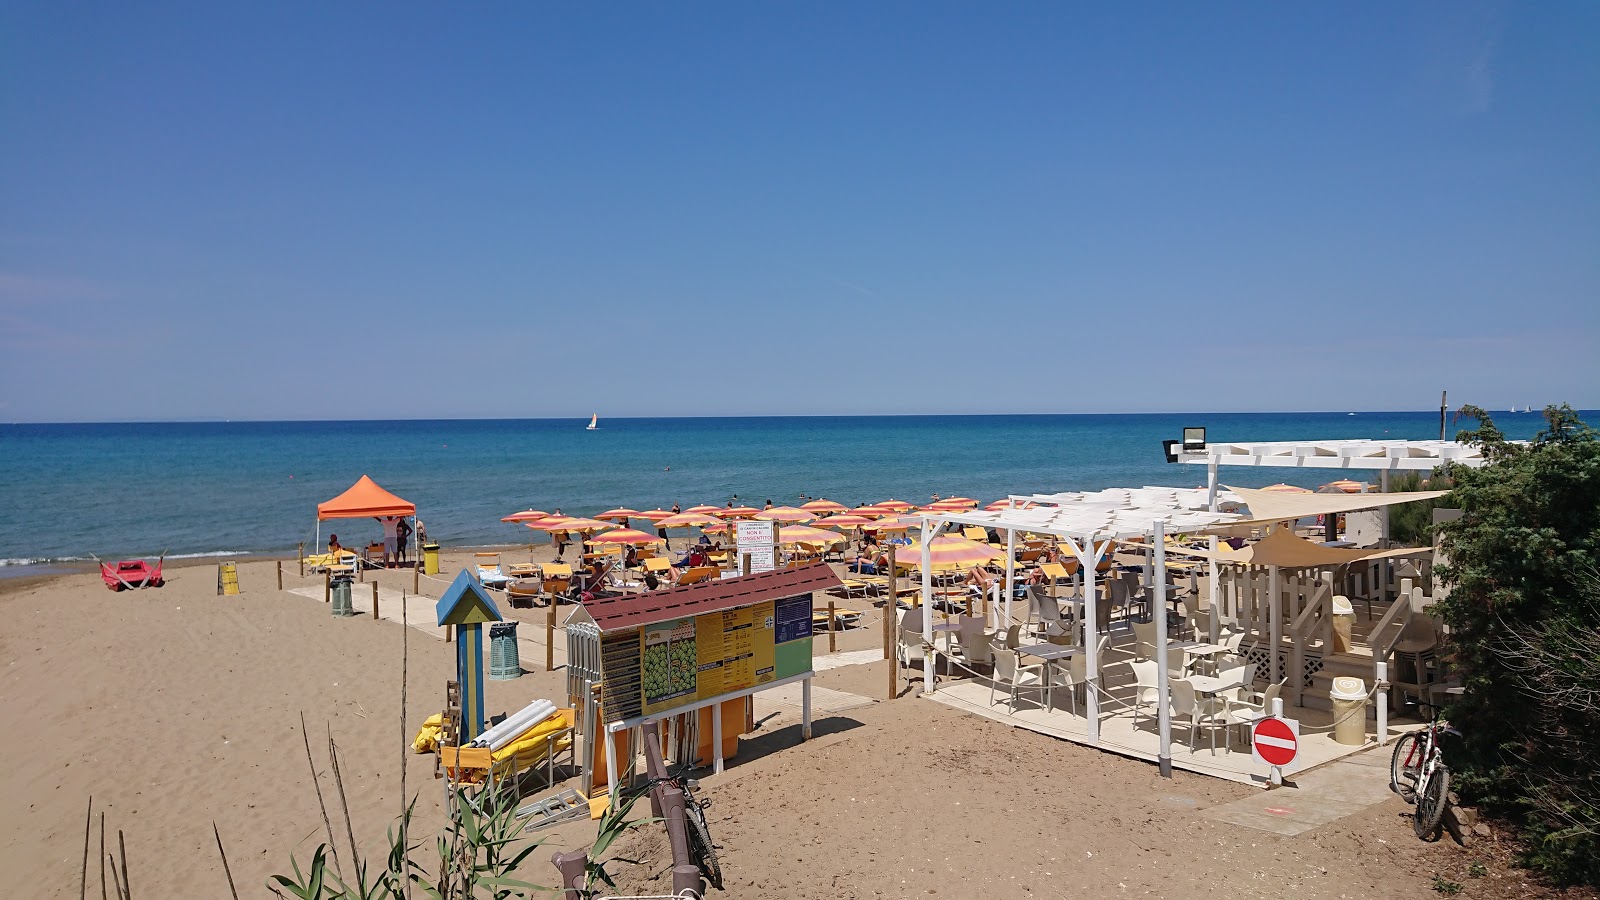 Spiaggia di Rimigliano'in fotoğrafı doğal alan içinde bulunmaktadır